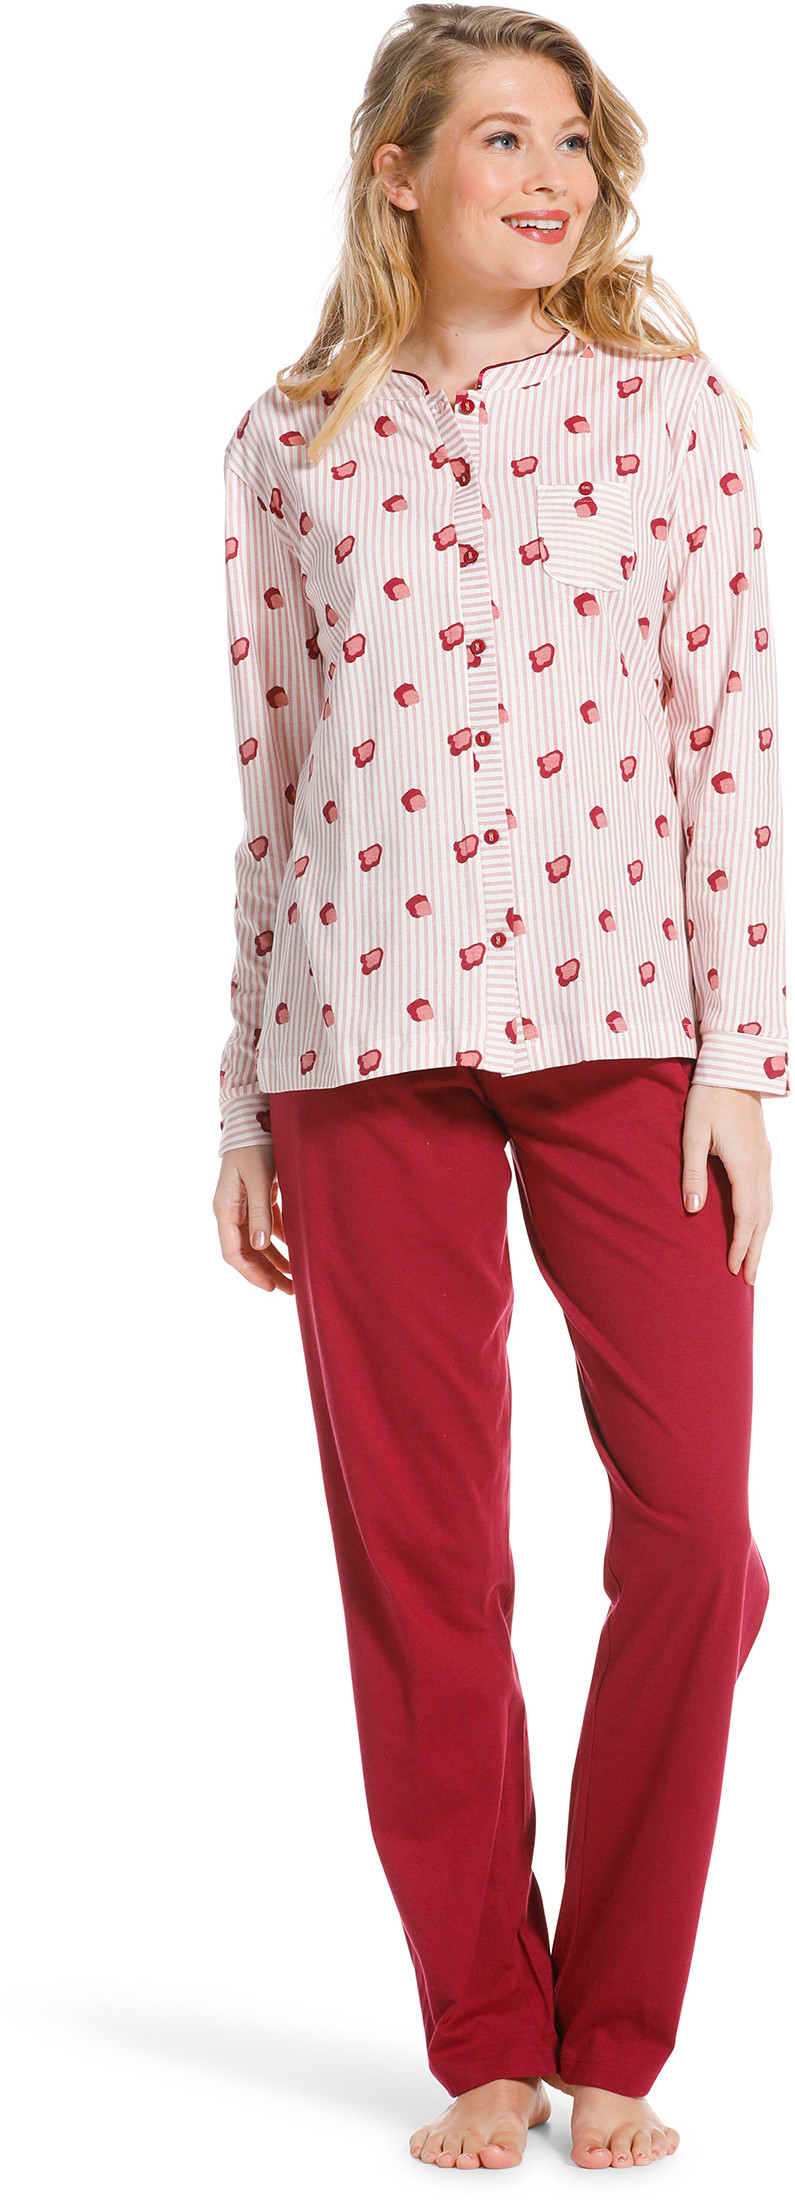 Pastunette doorknoop dames pyjama 20222-104-6-38